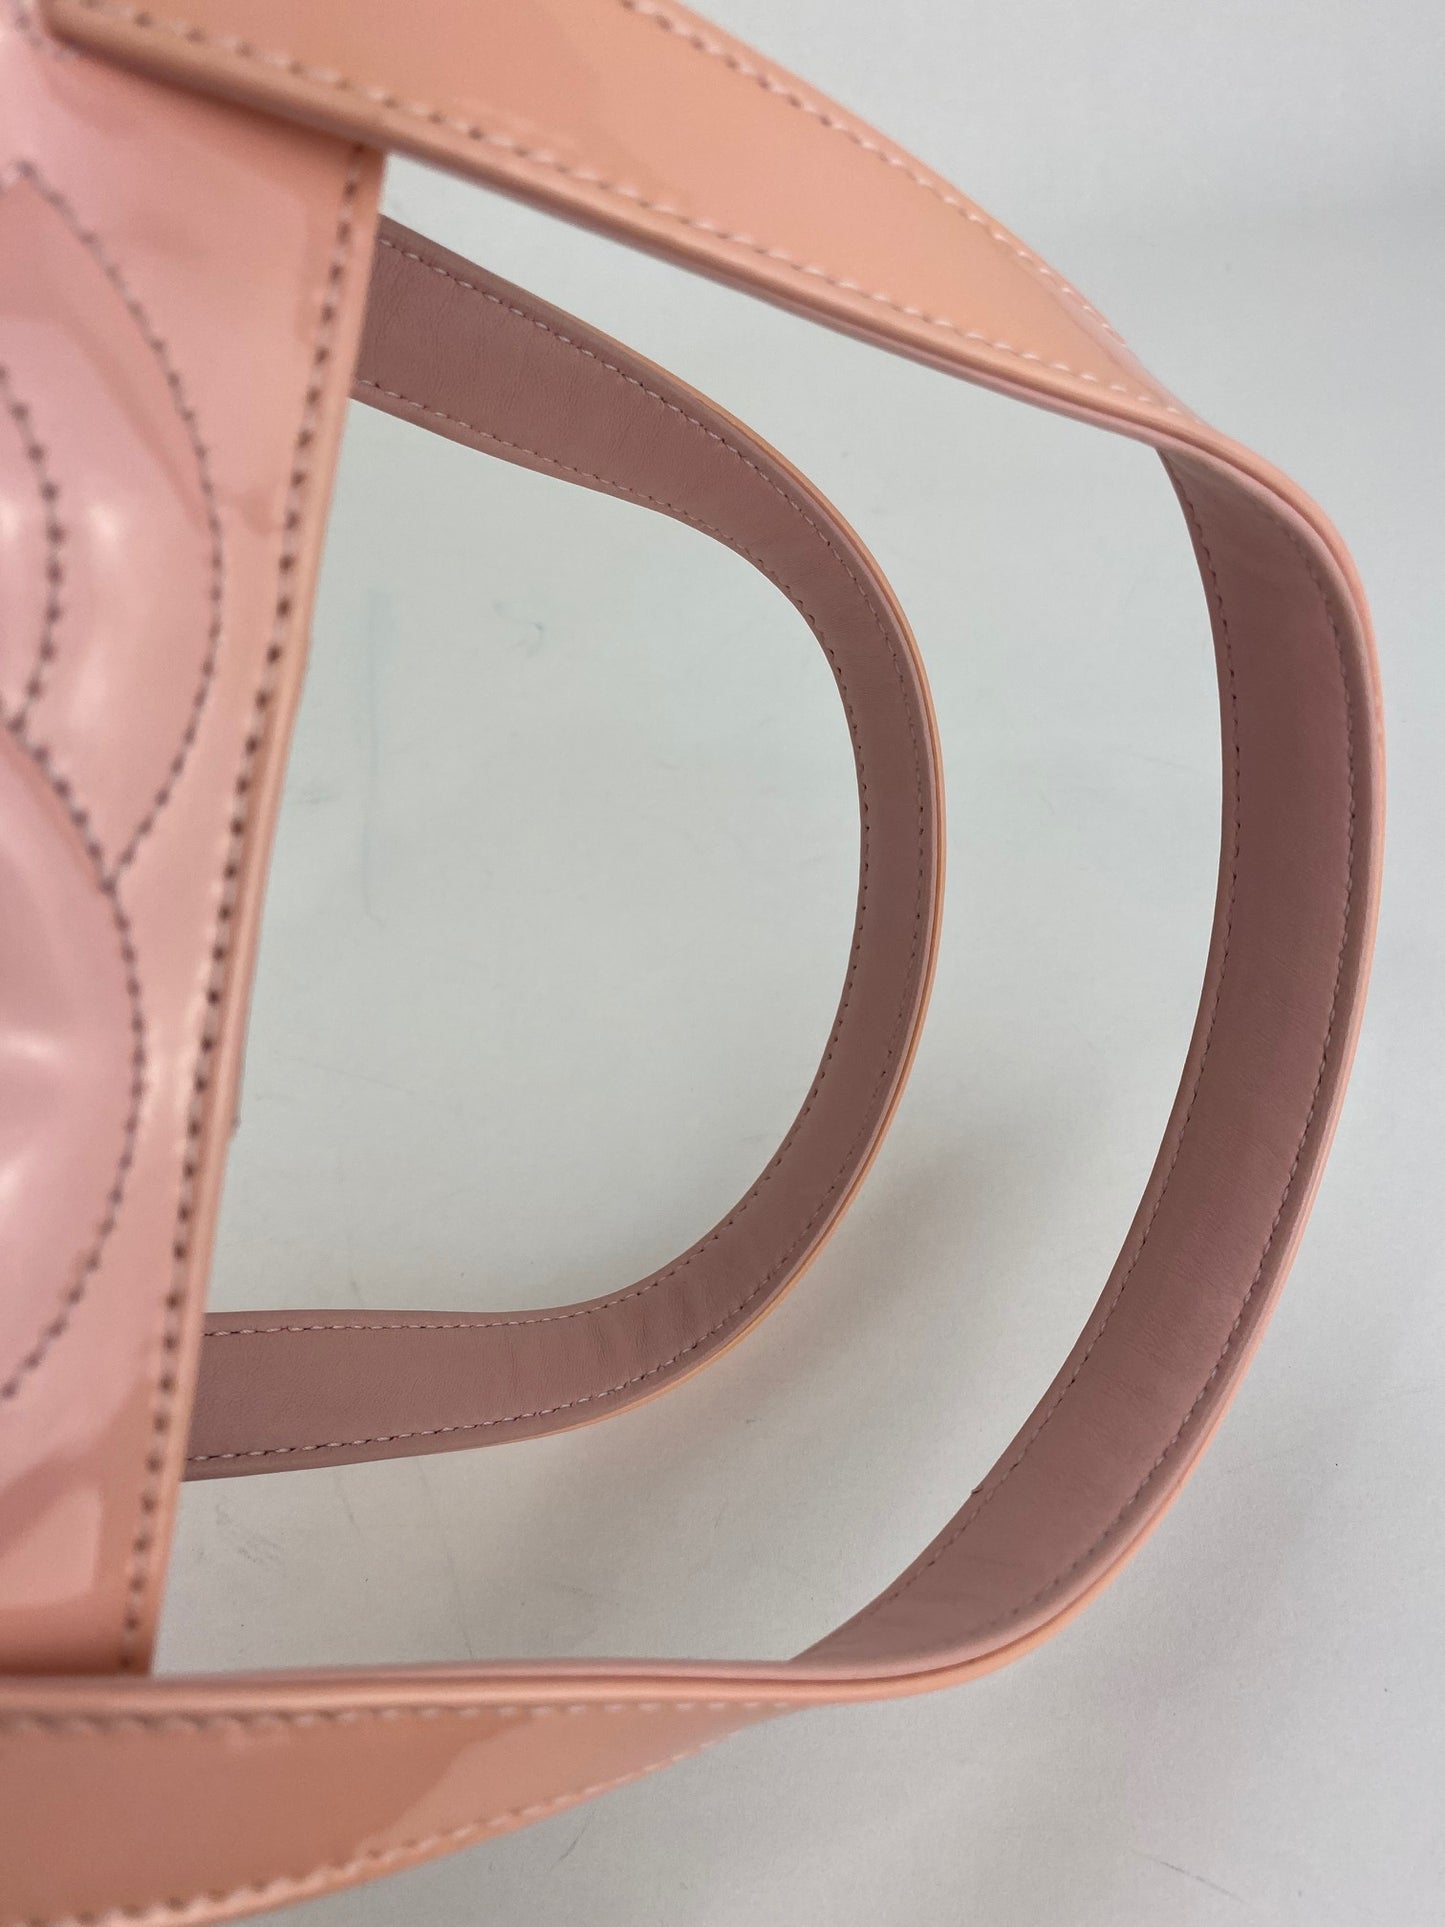 Pre-owned Shoulder Bag In Pink